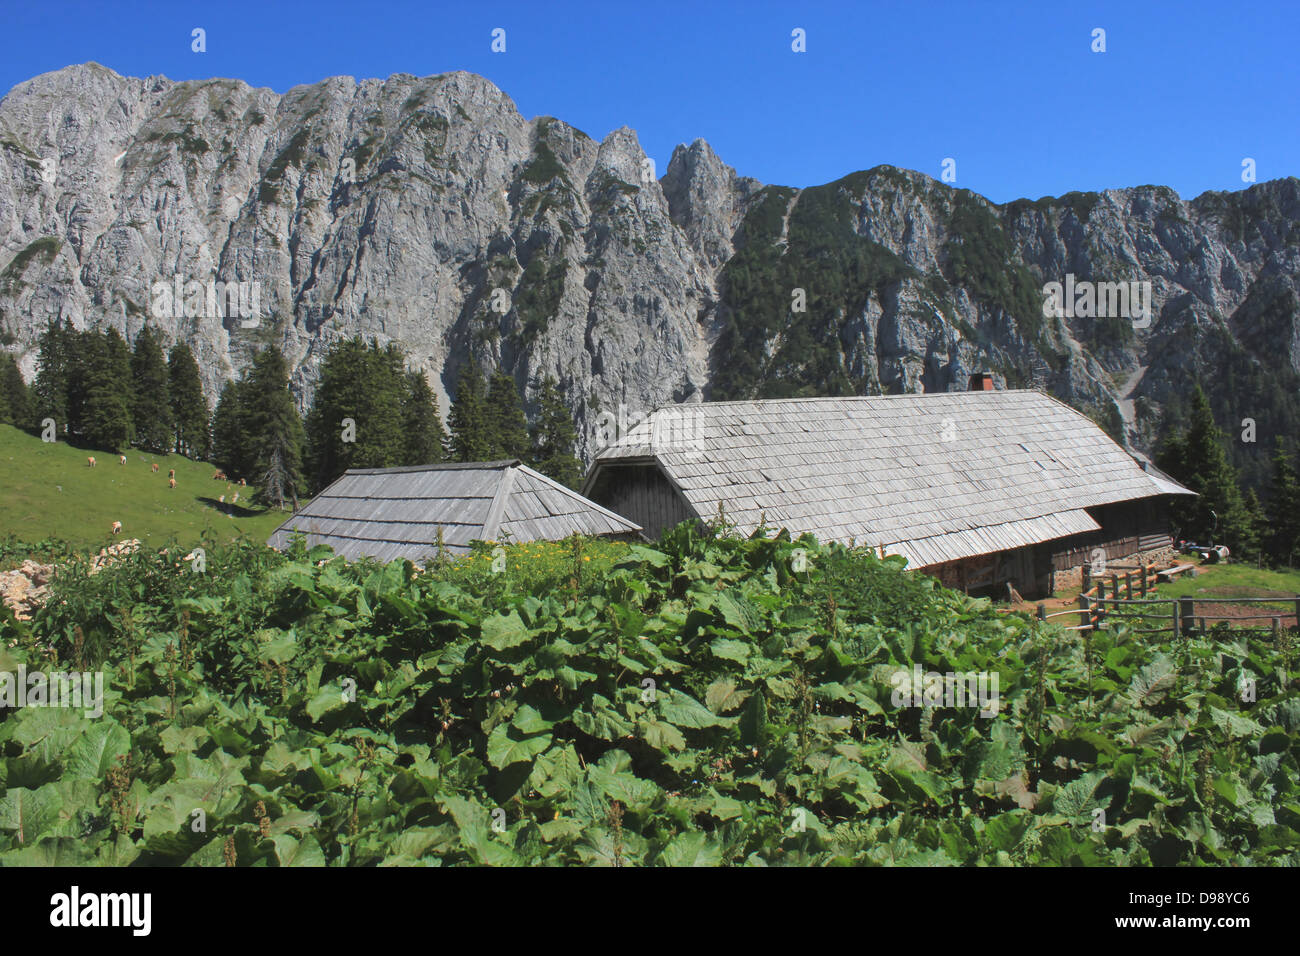 Chalet de montagne dans les montagnes Karavanke Korosica (Alpes slovènes) avec de la rhubarbe des moines (rumex alpinus) en premier plan Banque D'Images